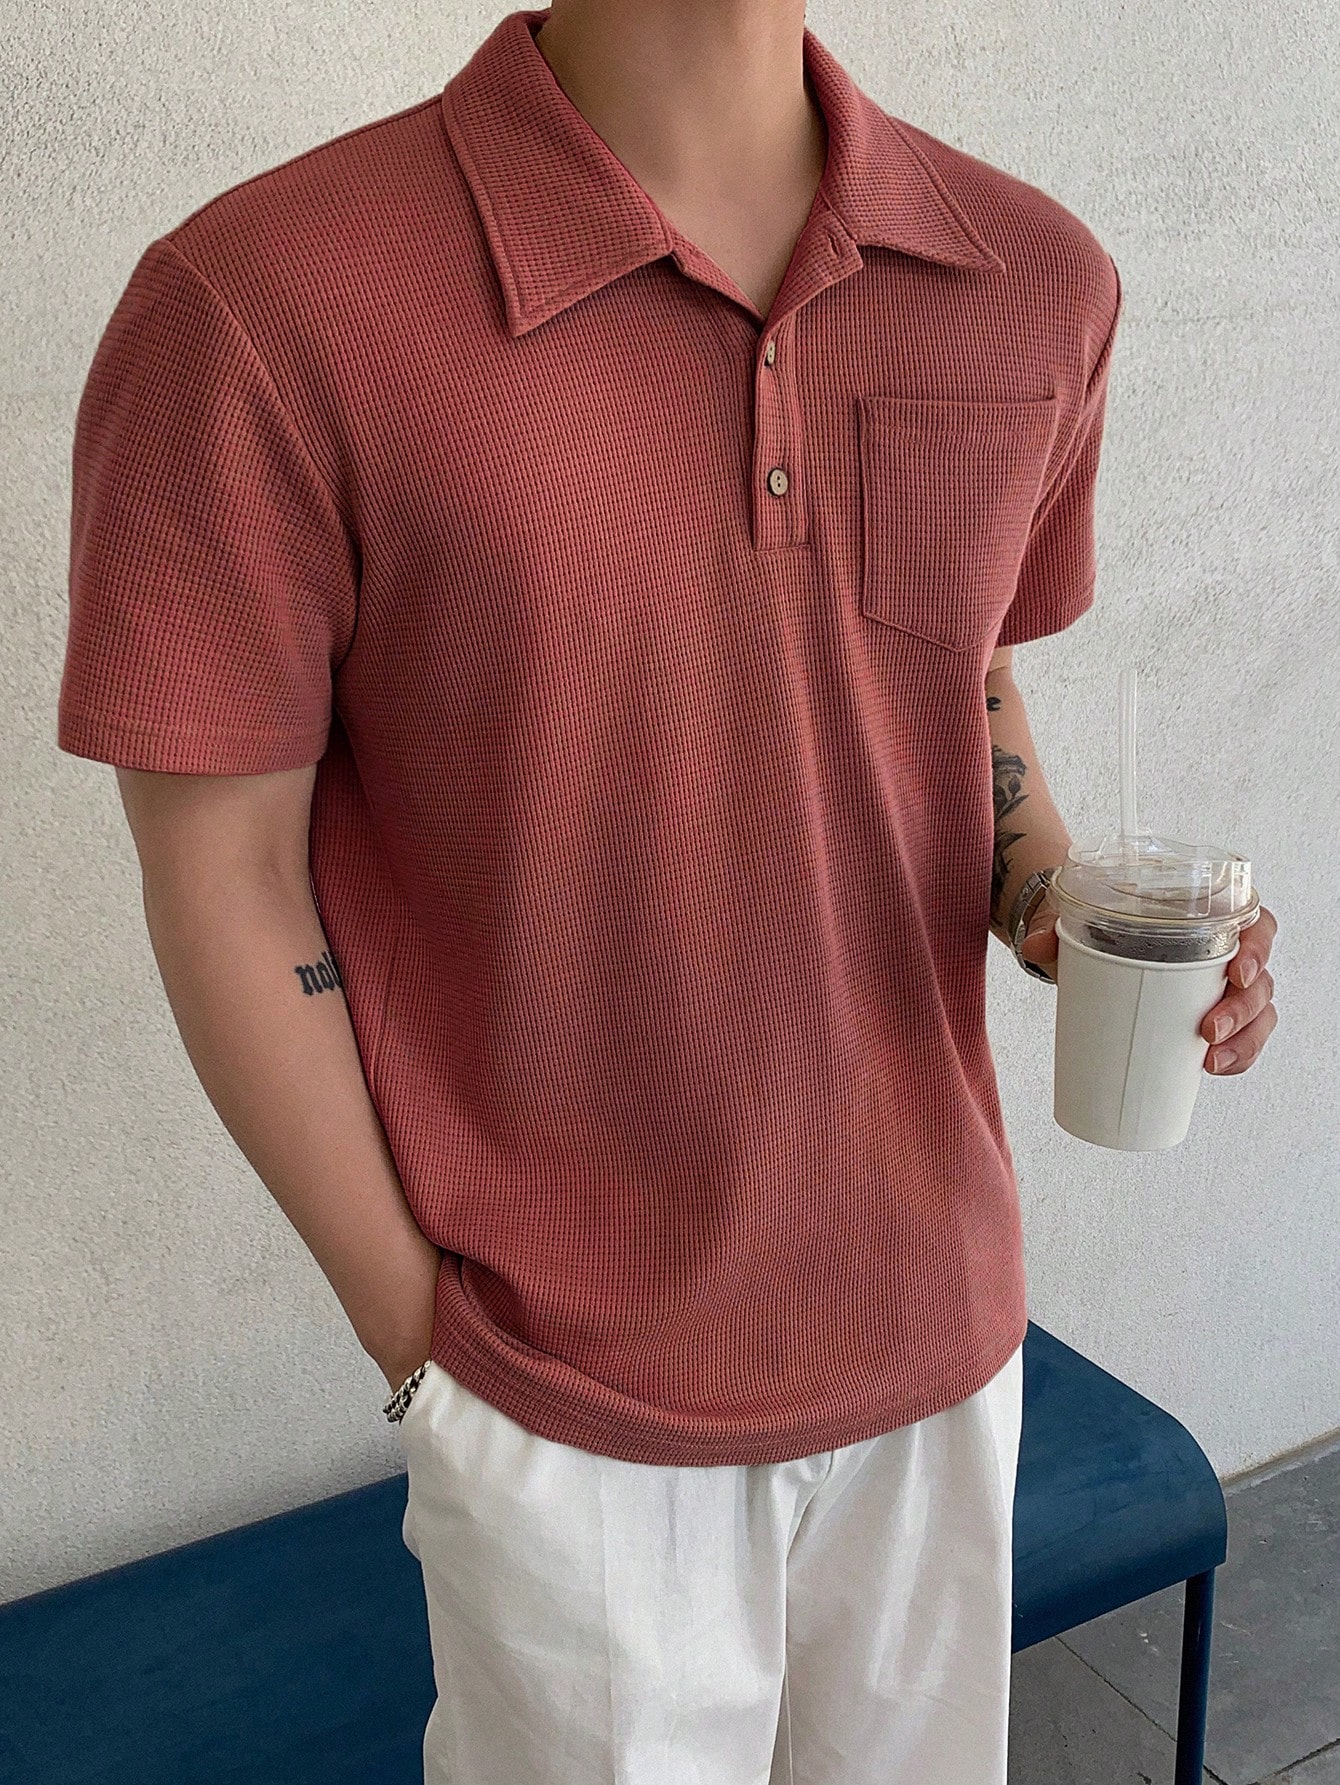 DAZY Мужская однотонная рубашка поло с коротким рукавом на лето, красный мужская рубашка с объемным рисунком морских животных морских рыб летняя повседневная свободная рубашка с короткими рукавами размеры до